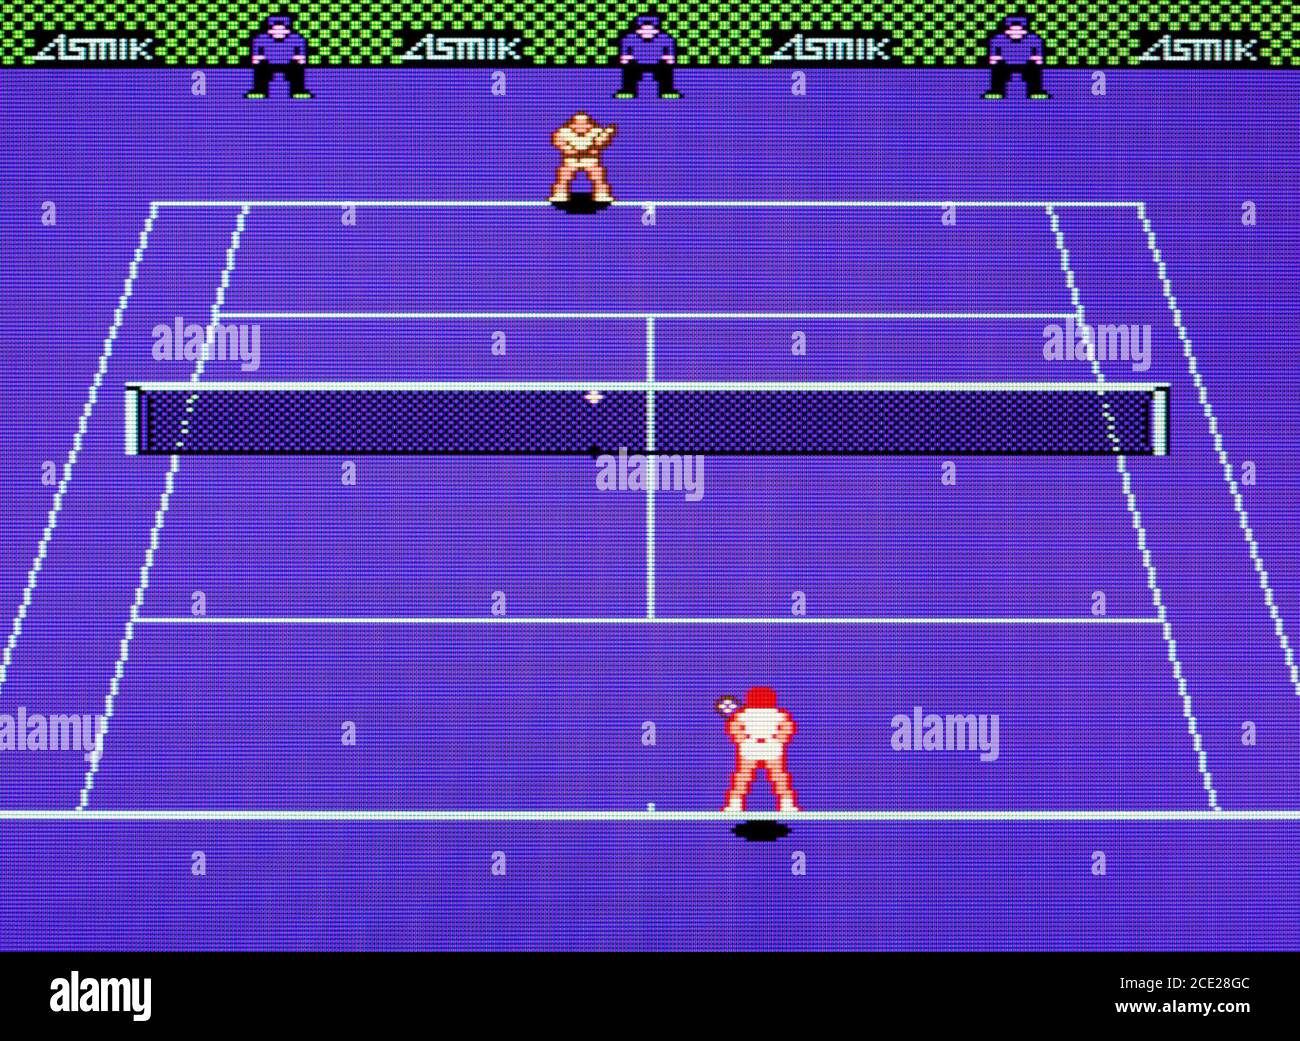 Chris Evert & Ivan Lendl Top Players' Tennis - Nintendo Entertainment System - NES Videogame - nur für redaktionelle Verwendung Stockfoto